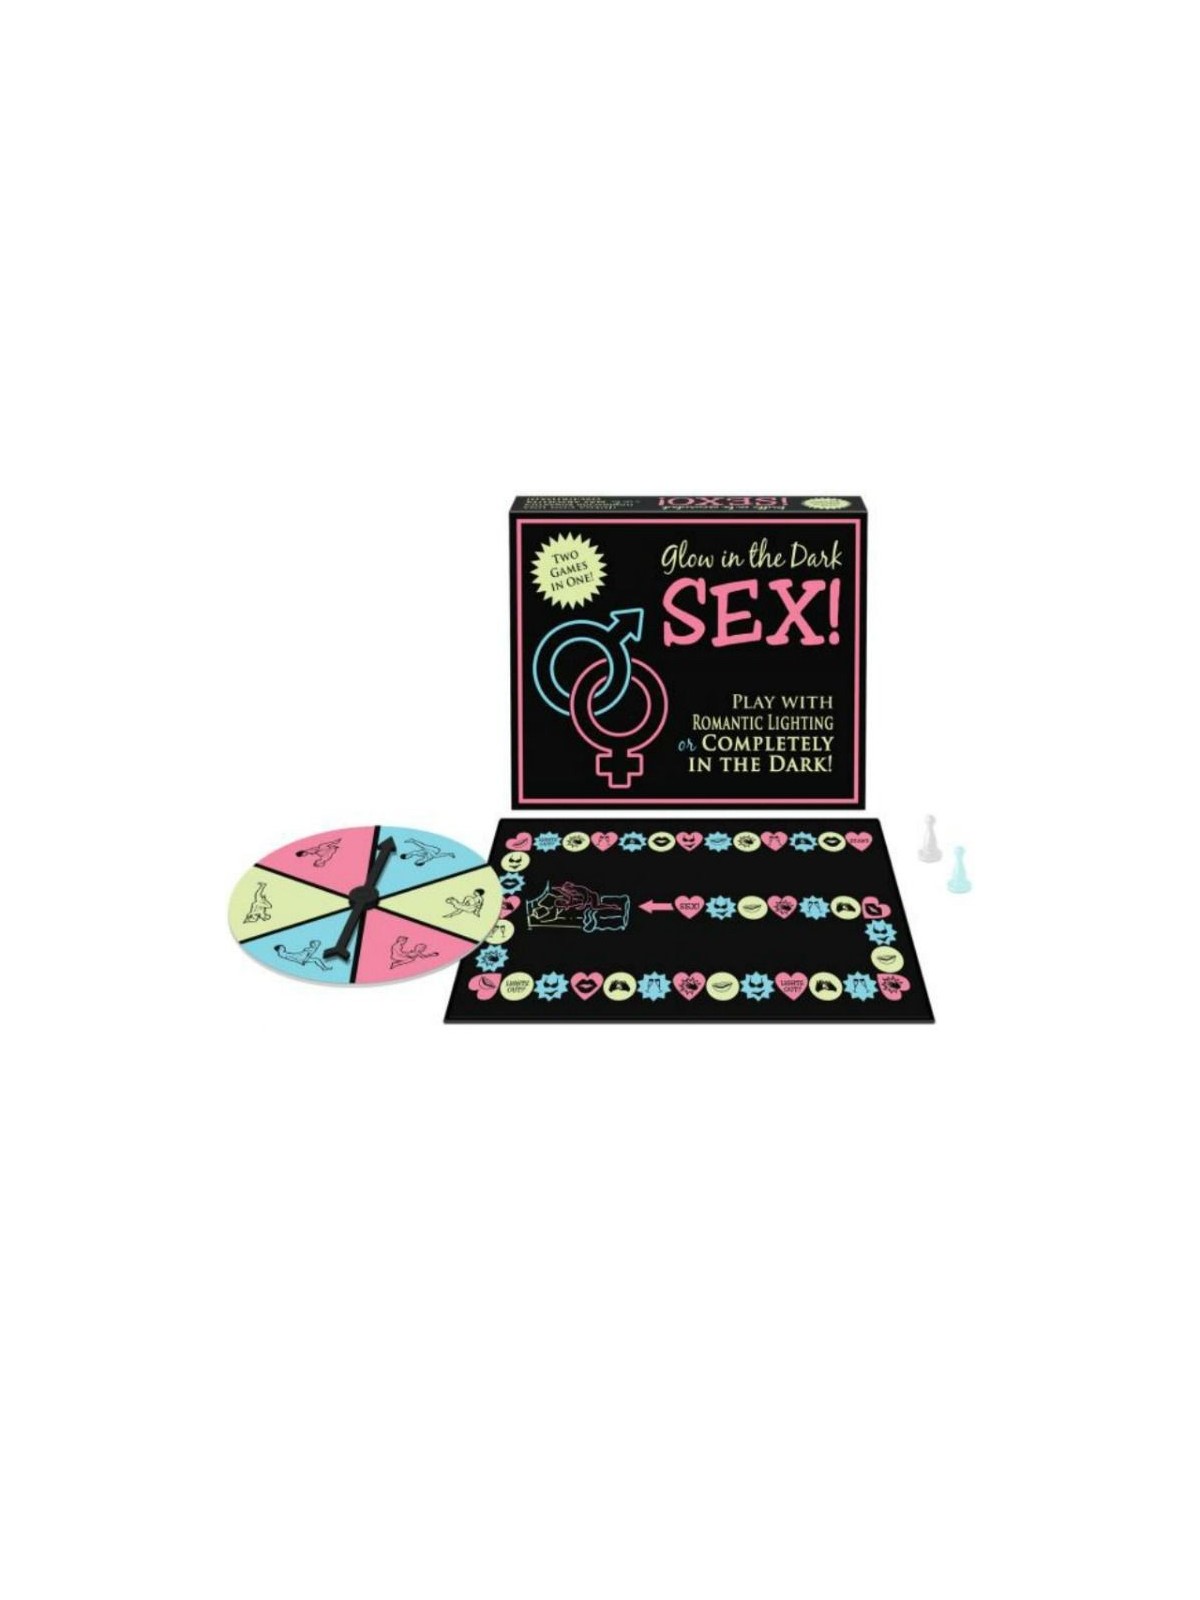 Kheper Games Juego Glow In The Dark Sex! - Comprar Juego mesa erótico Kheper Games, Inc. - Juegos de mesa eróticos (1)